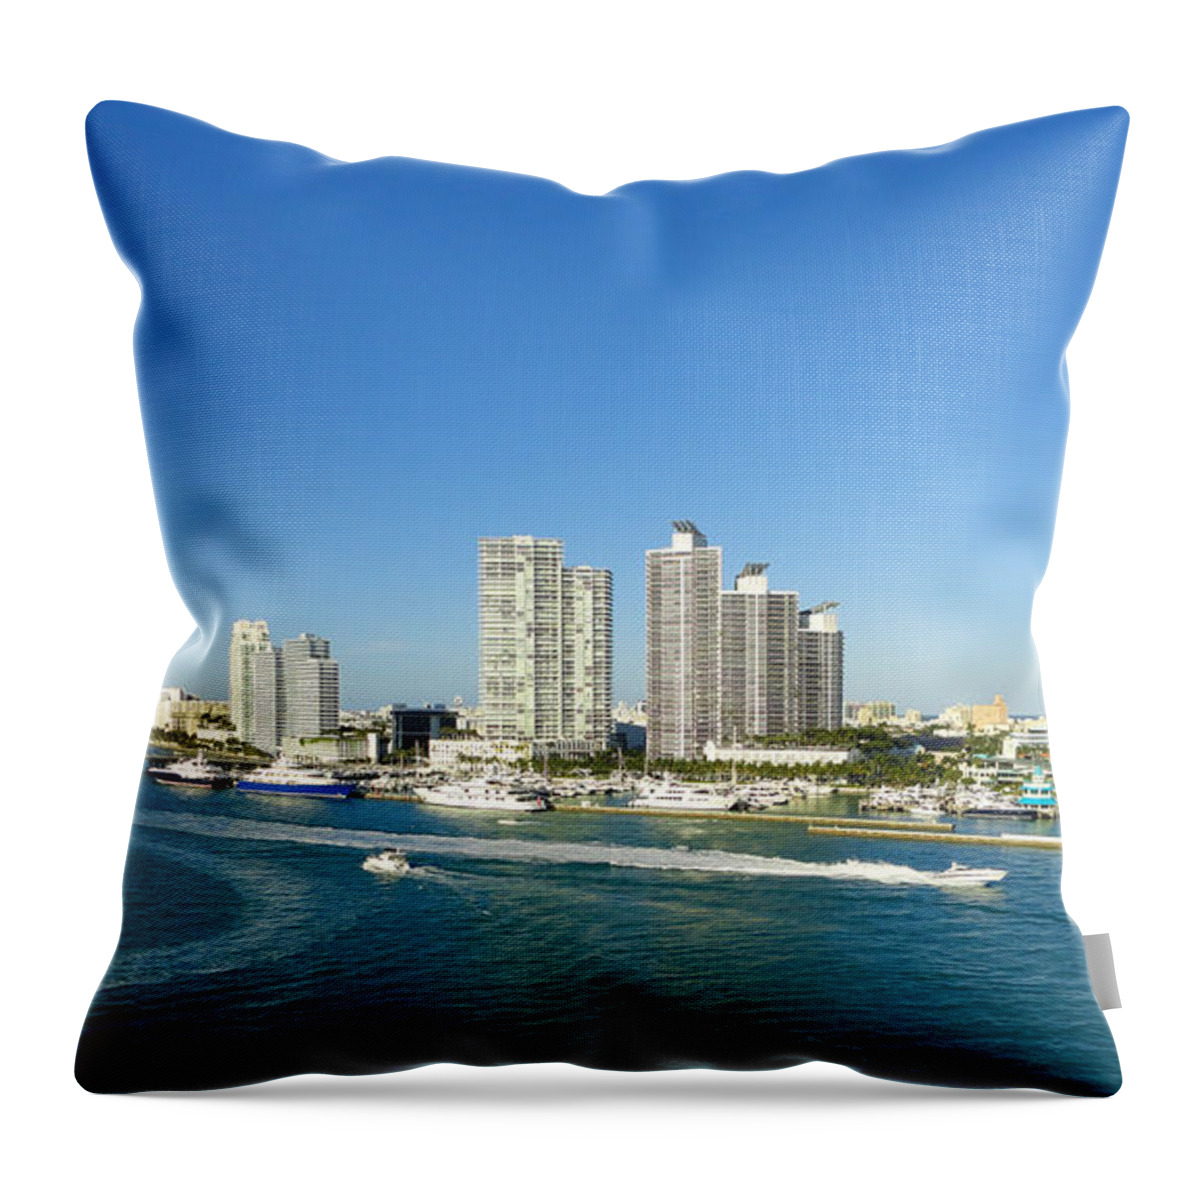 Miami Panorama Throw Pillow featuring the photograph Miami skyline by Dejan Jovanovic